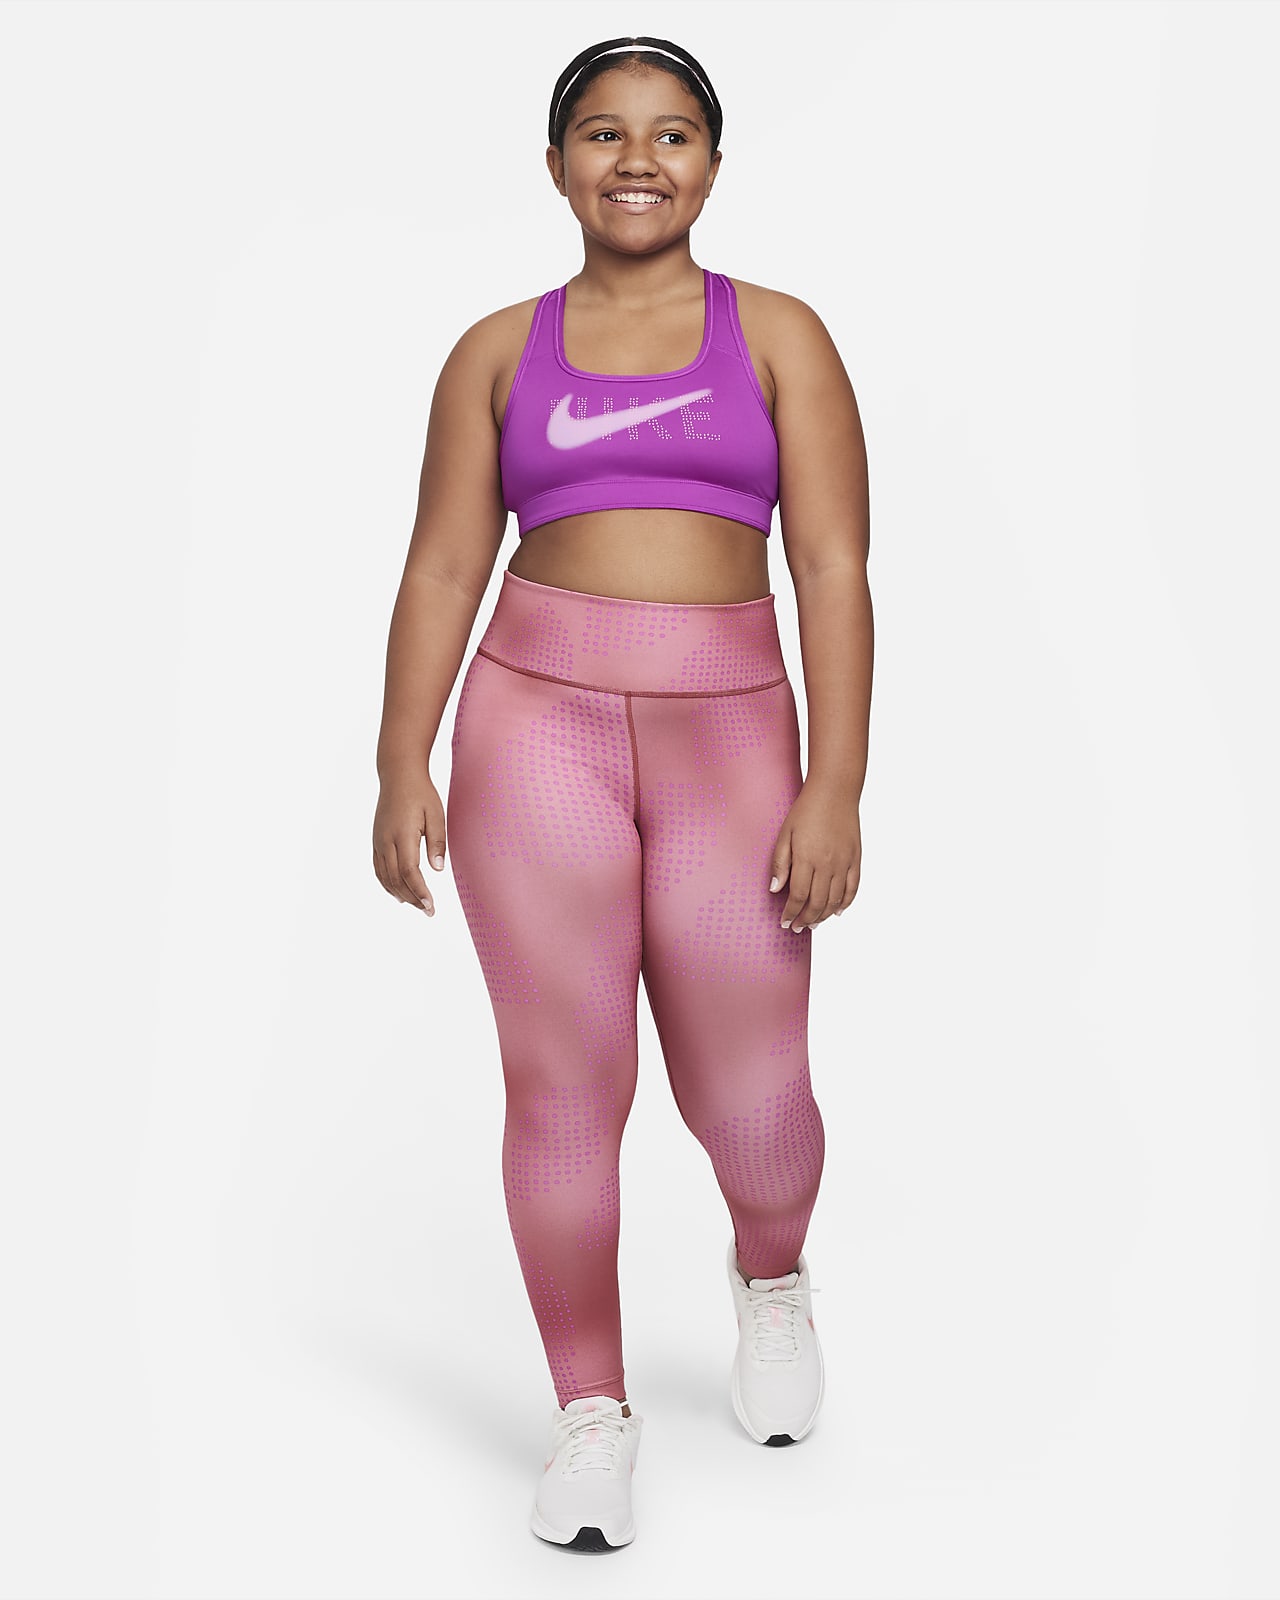 Girls Big Kids (XS - XL) Nike One Sports Bras.